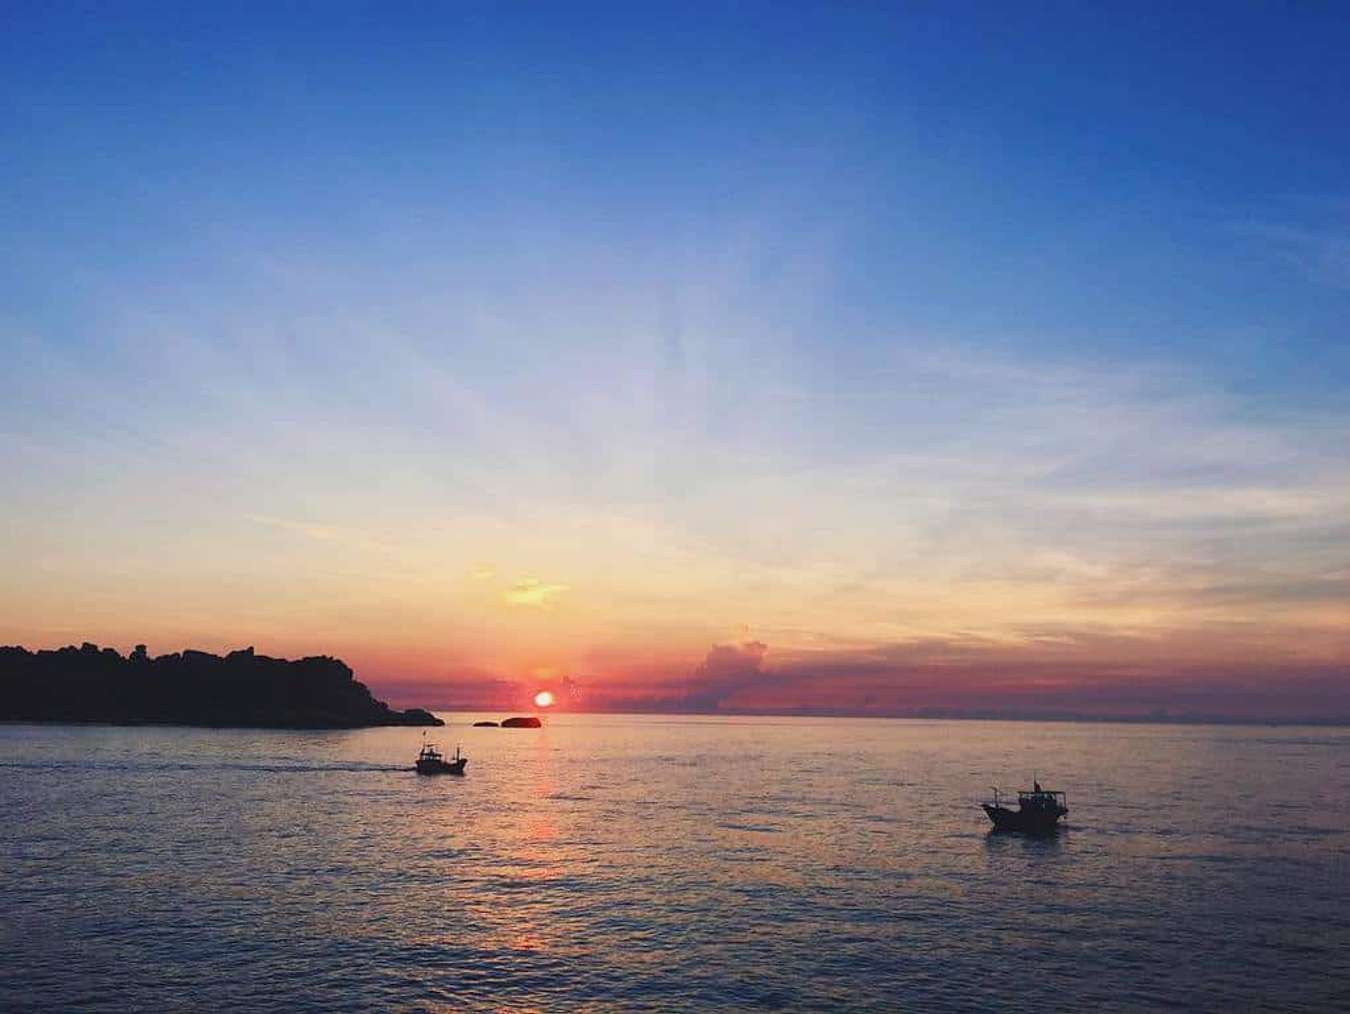 Du lịch biển Việt Nam không thiếu những hòn đảo nên thơ cho một mùa hè tràn ngập 